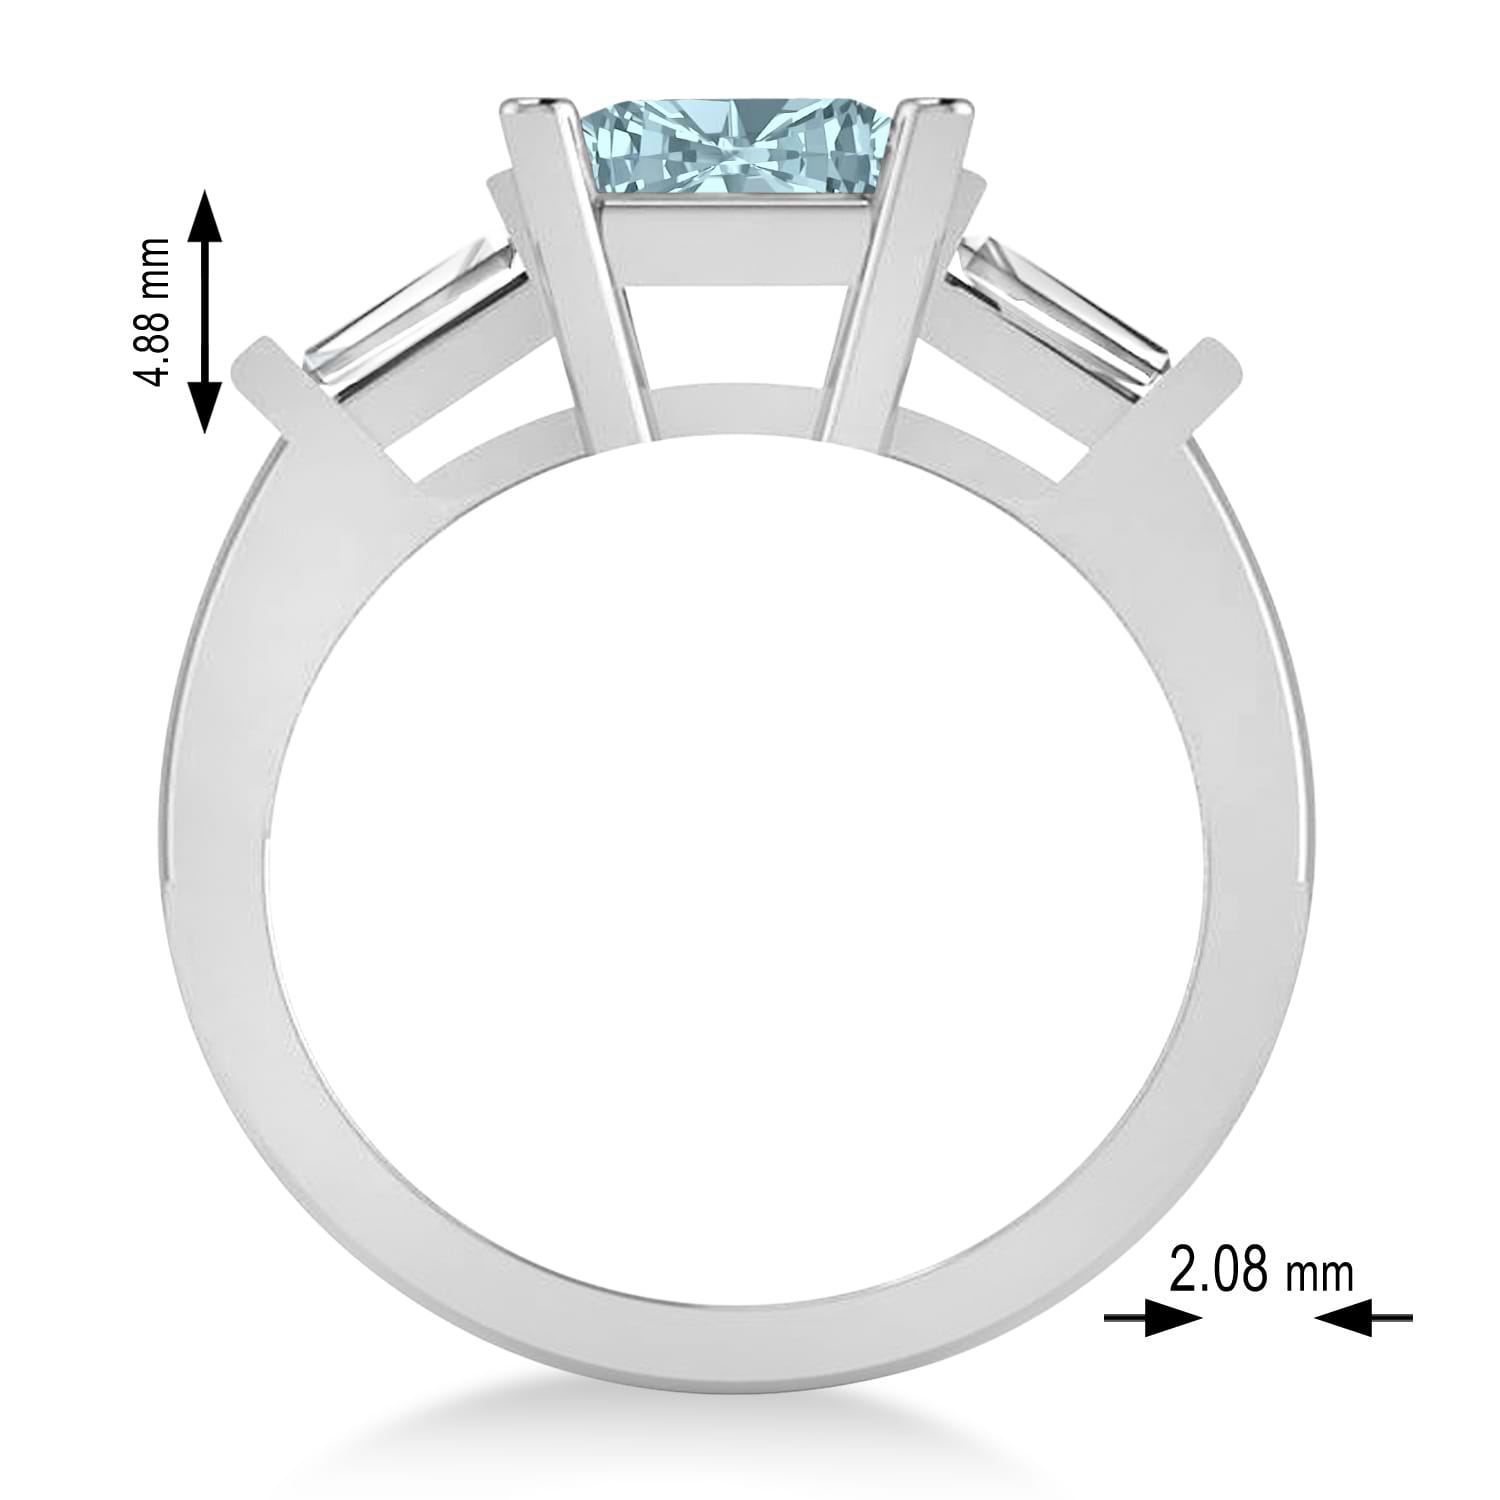 Aquamarine & Diamond Three-Stone Radiant Ring 14k White Gold (2.12ct)